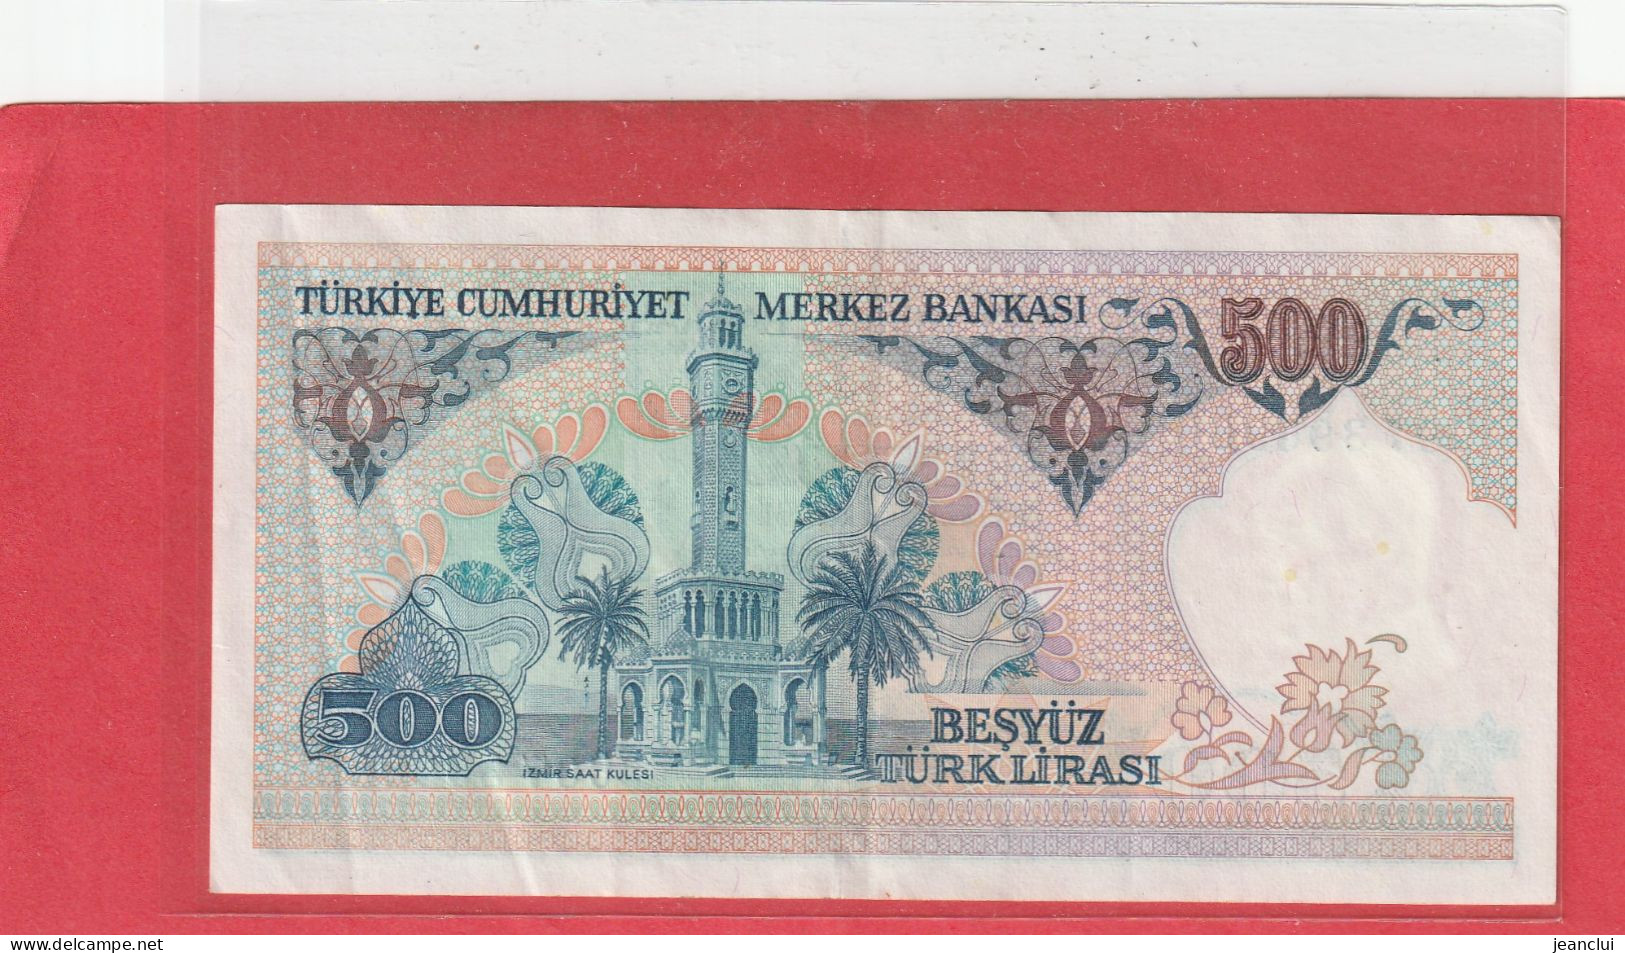 TURKIYE CUMHURIYET MERKEZ BANKASI . 500 LIRA . 14 OCAK 1970  . N°  C 07396966 .  2 SCANNES  .  BEL ETAT - Turquia